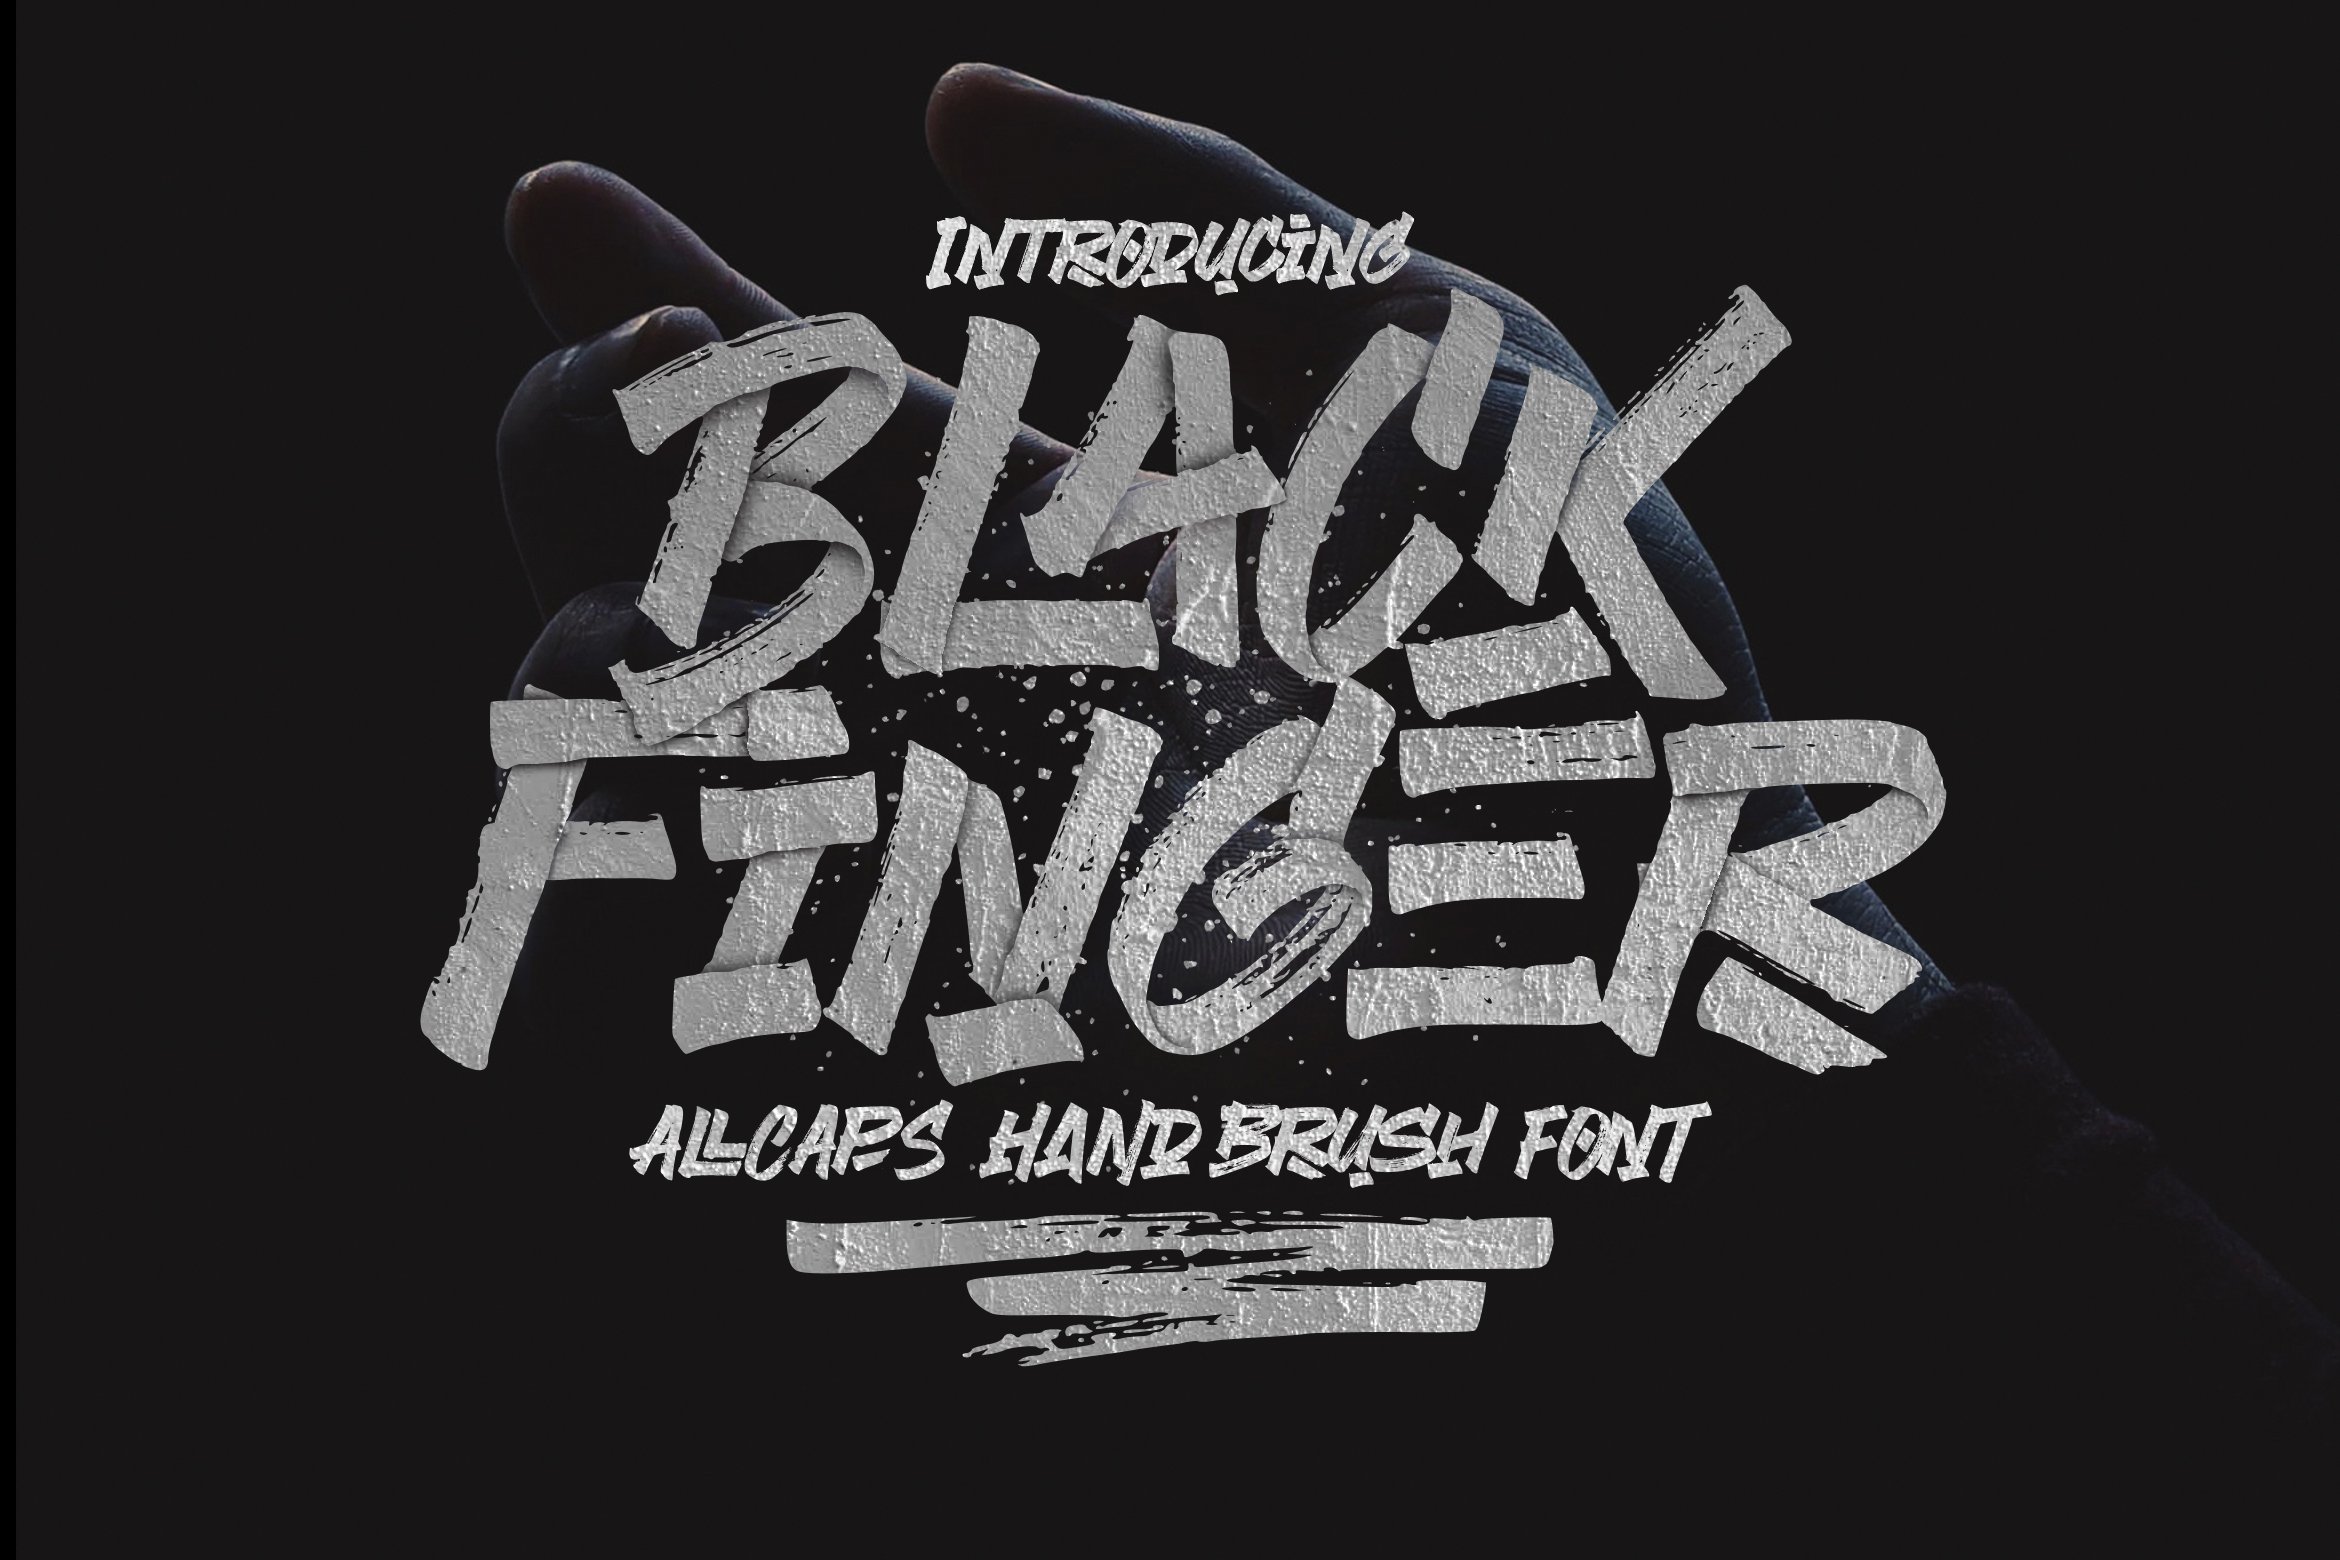 Black Finger Brush Font cover image.